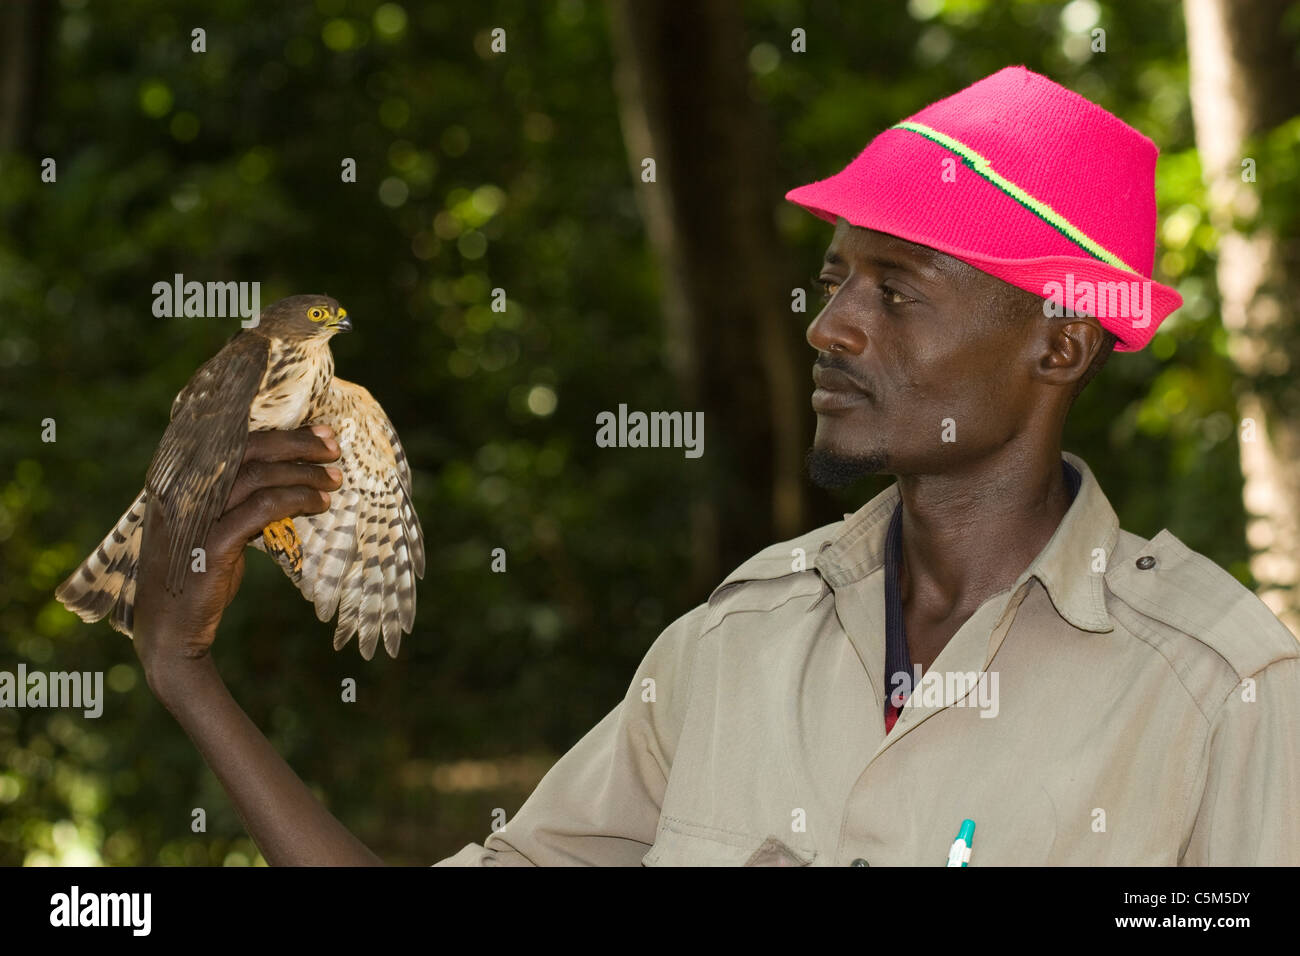 Peu familier, Accipiter minullus, sur un oiseau part chercheur Ethiopie Banque D'Images